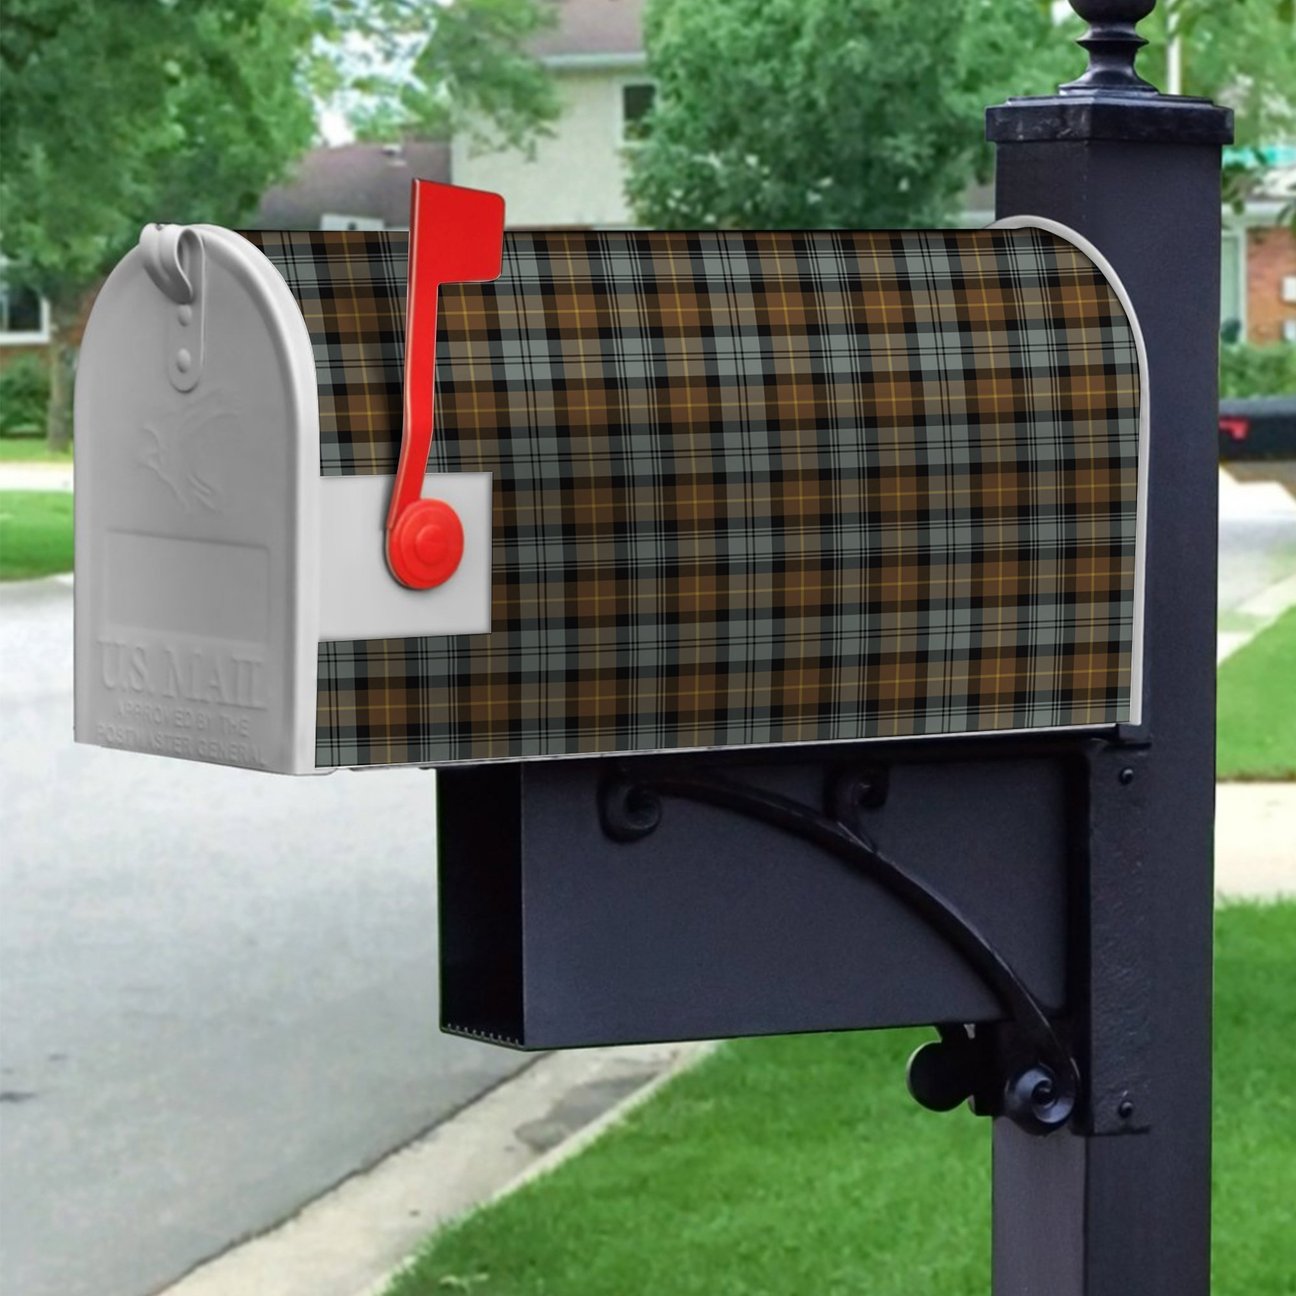 Gordon Weathered Tartan Crest Mailbox